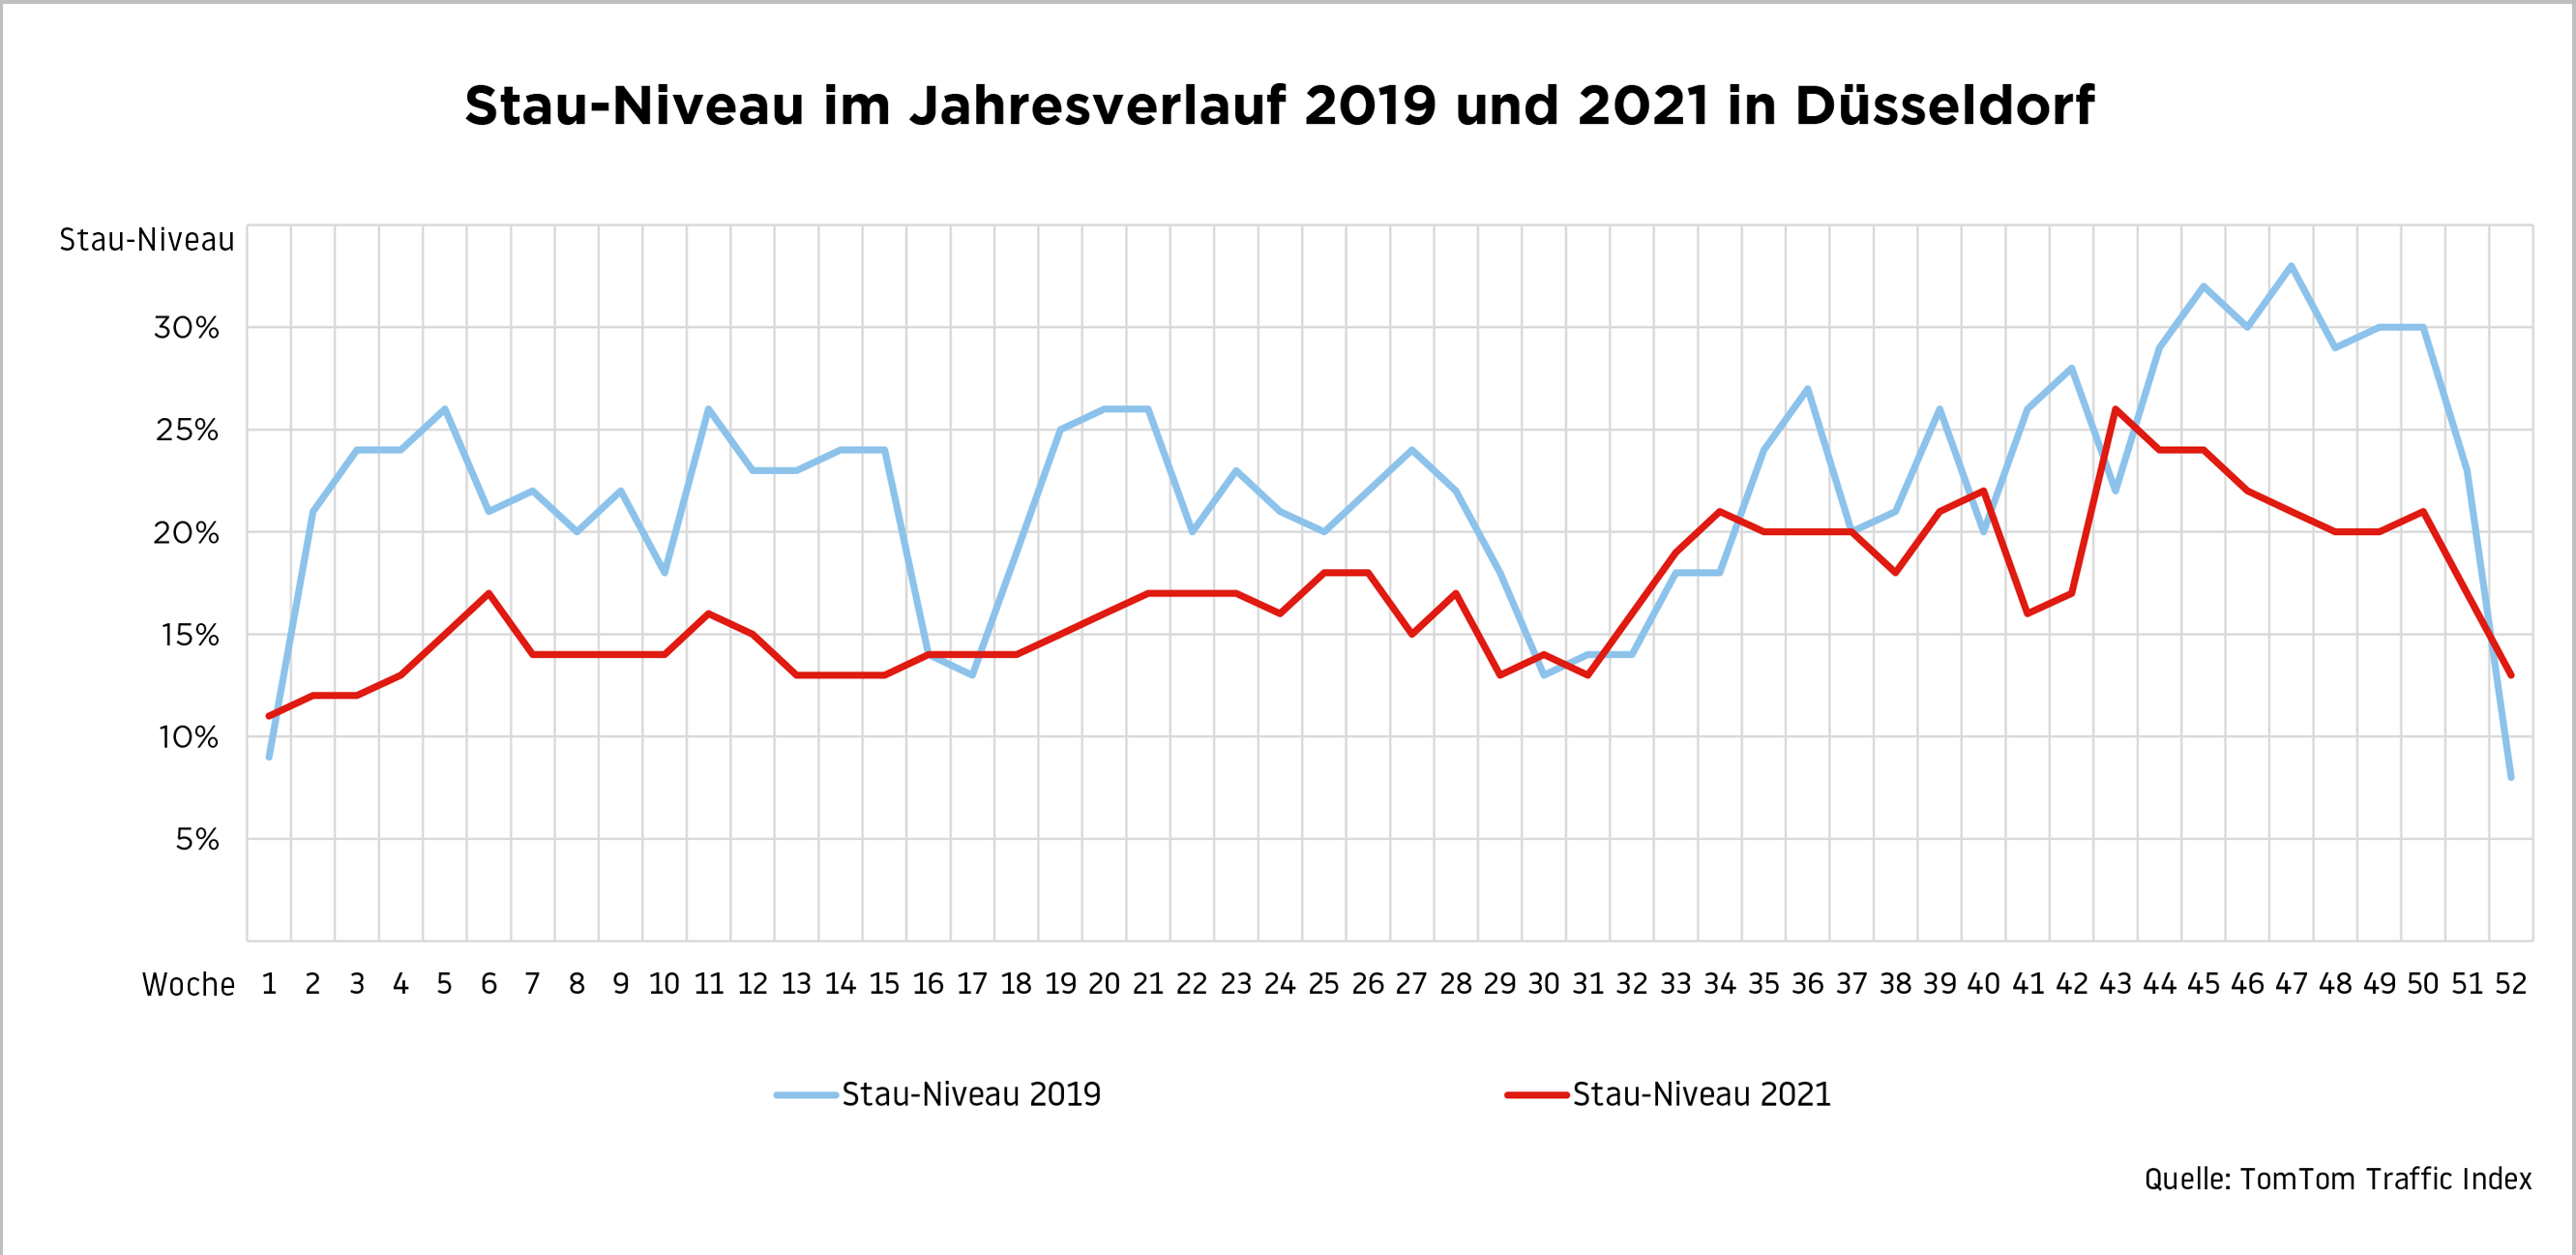 Auch in 2021 lag das Stau-Niveau in Düsseldorf im Jahresverlauf wieder deutlich unter dem Vergleichswert von 2019 ©TomTom